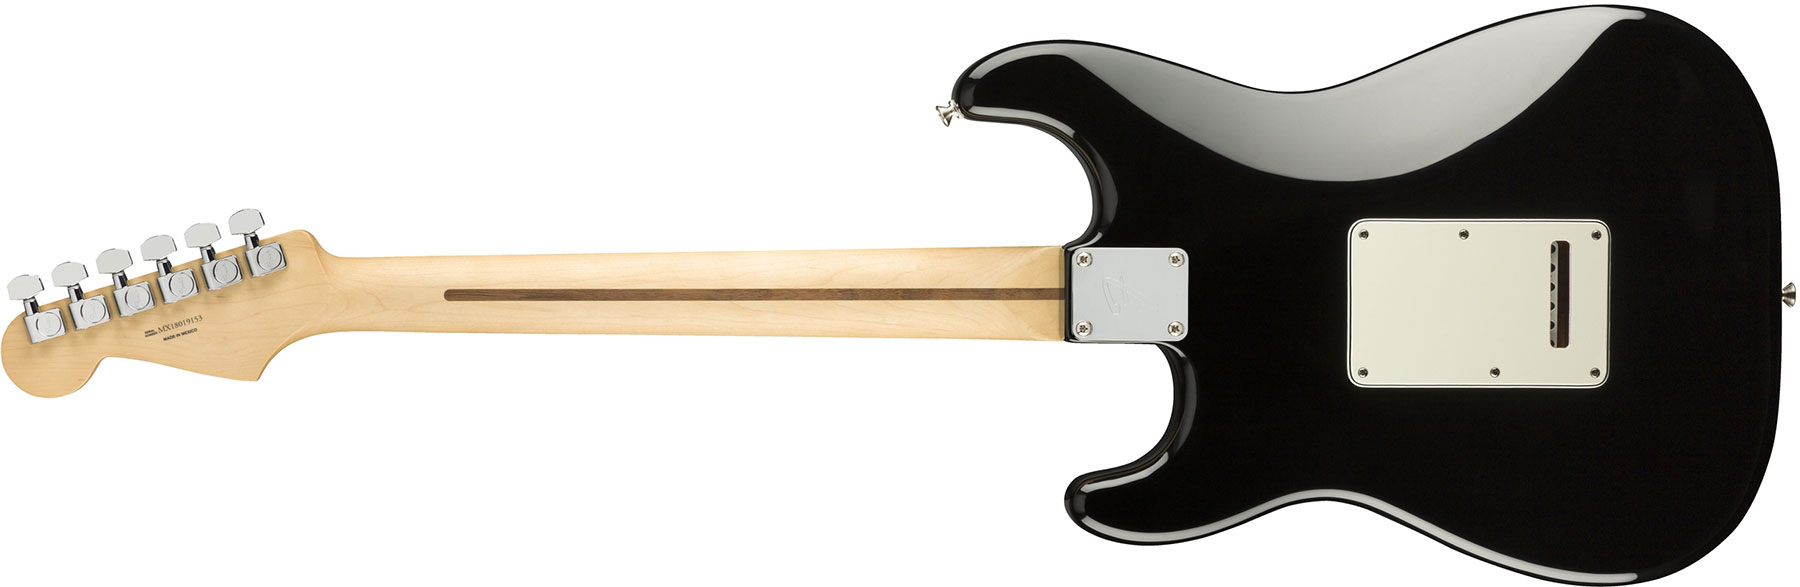 Fender Strat Player Mex Hss Pf - Black - Elektrische gitaar in Str-vorm - Variation 1